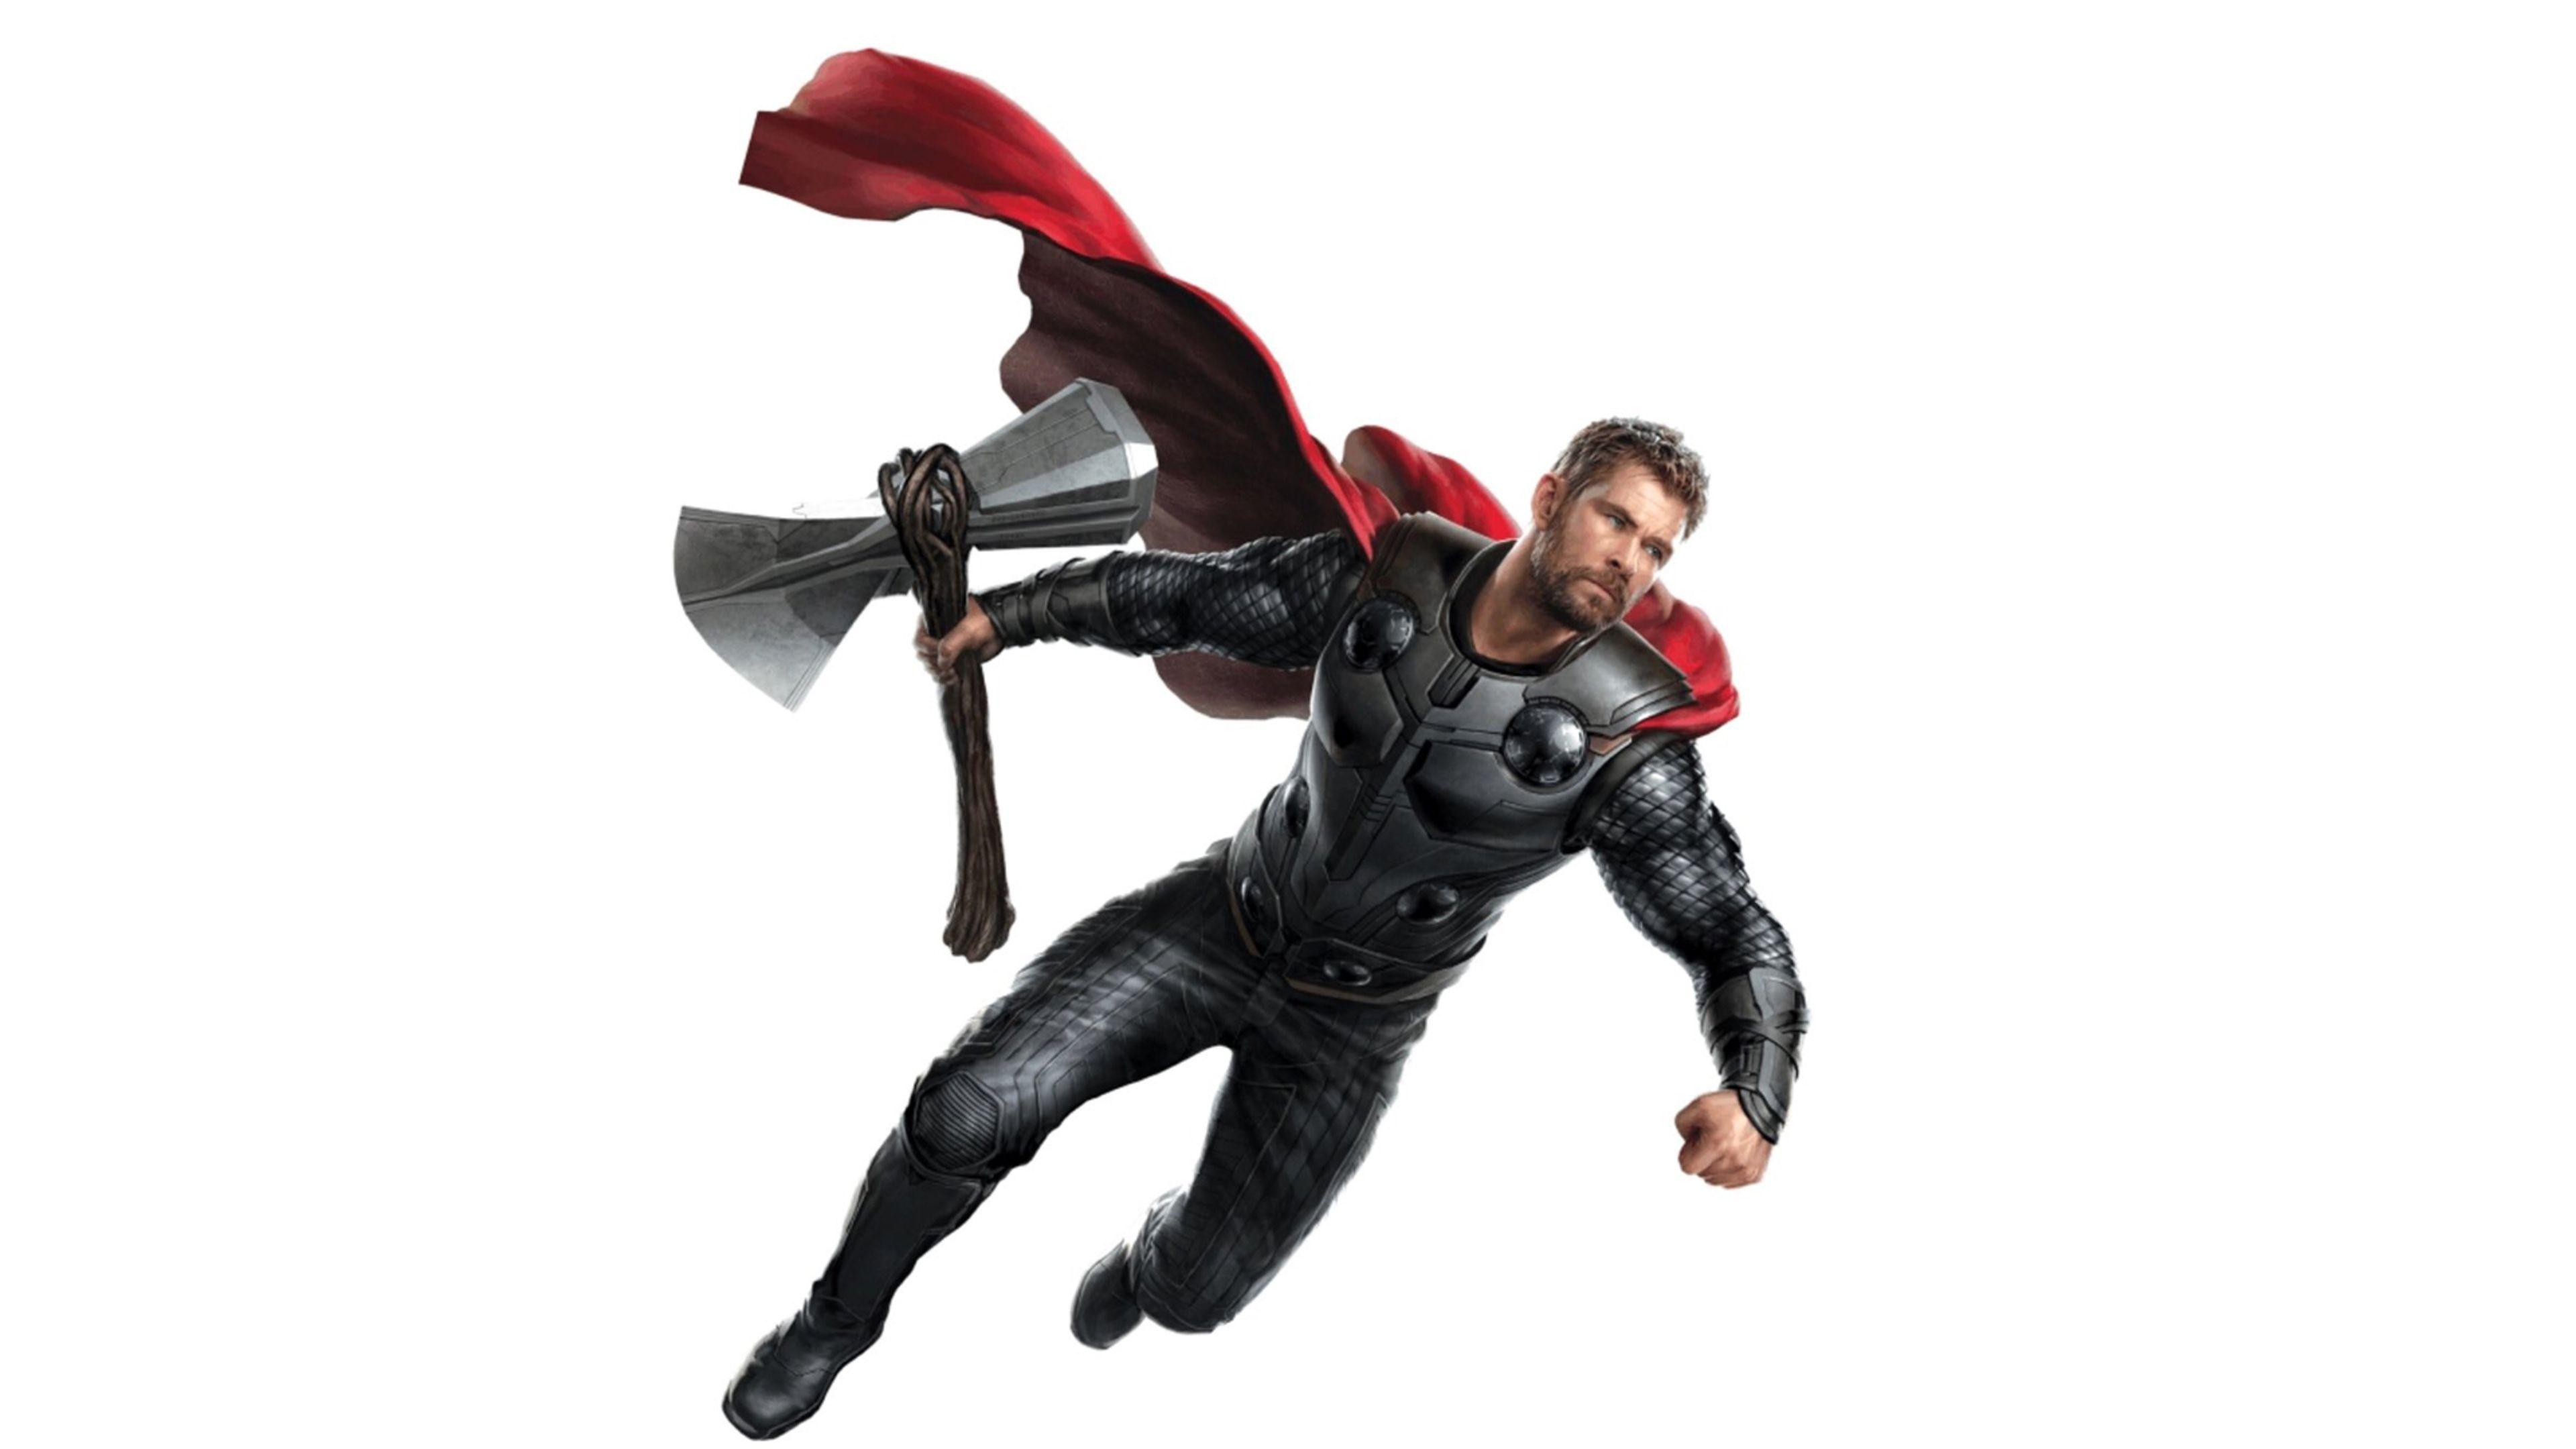 Avengers 4 End Game Thor 4k avengers end game thor wallpaper HD 4k